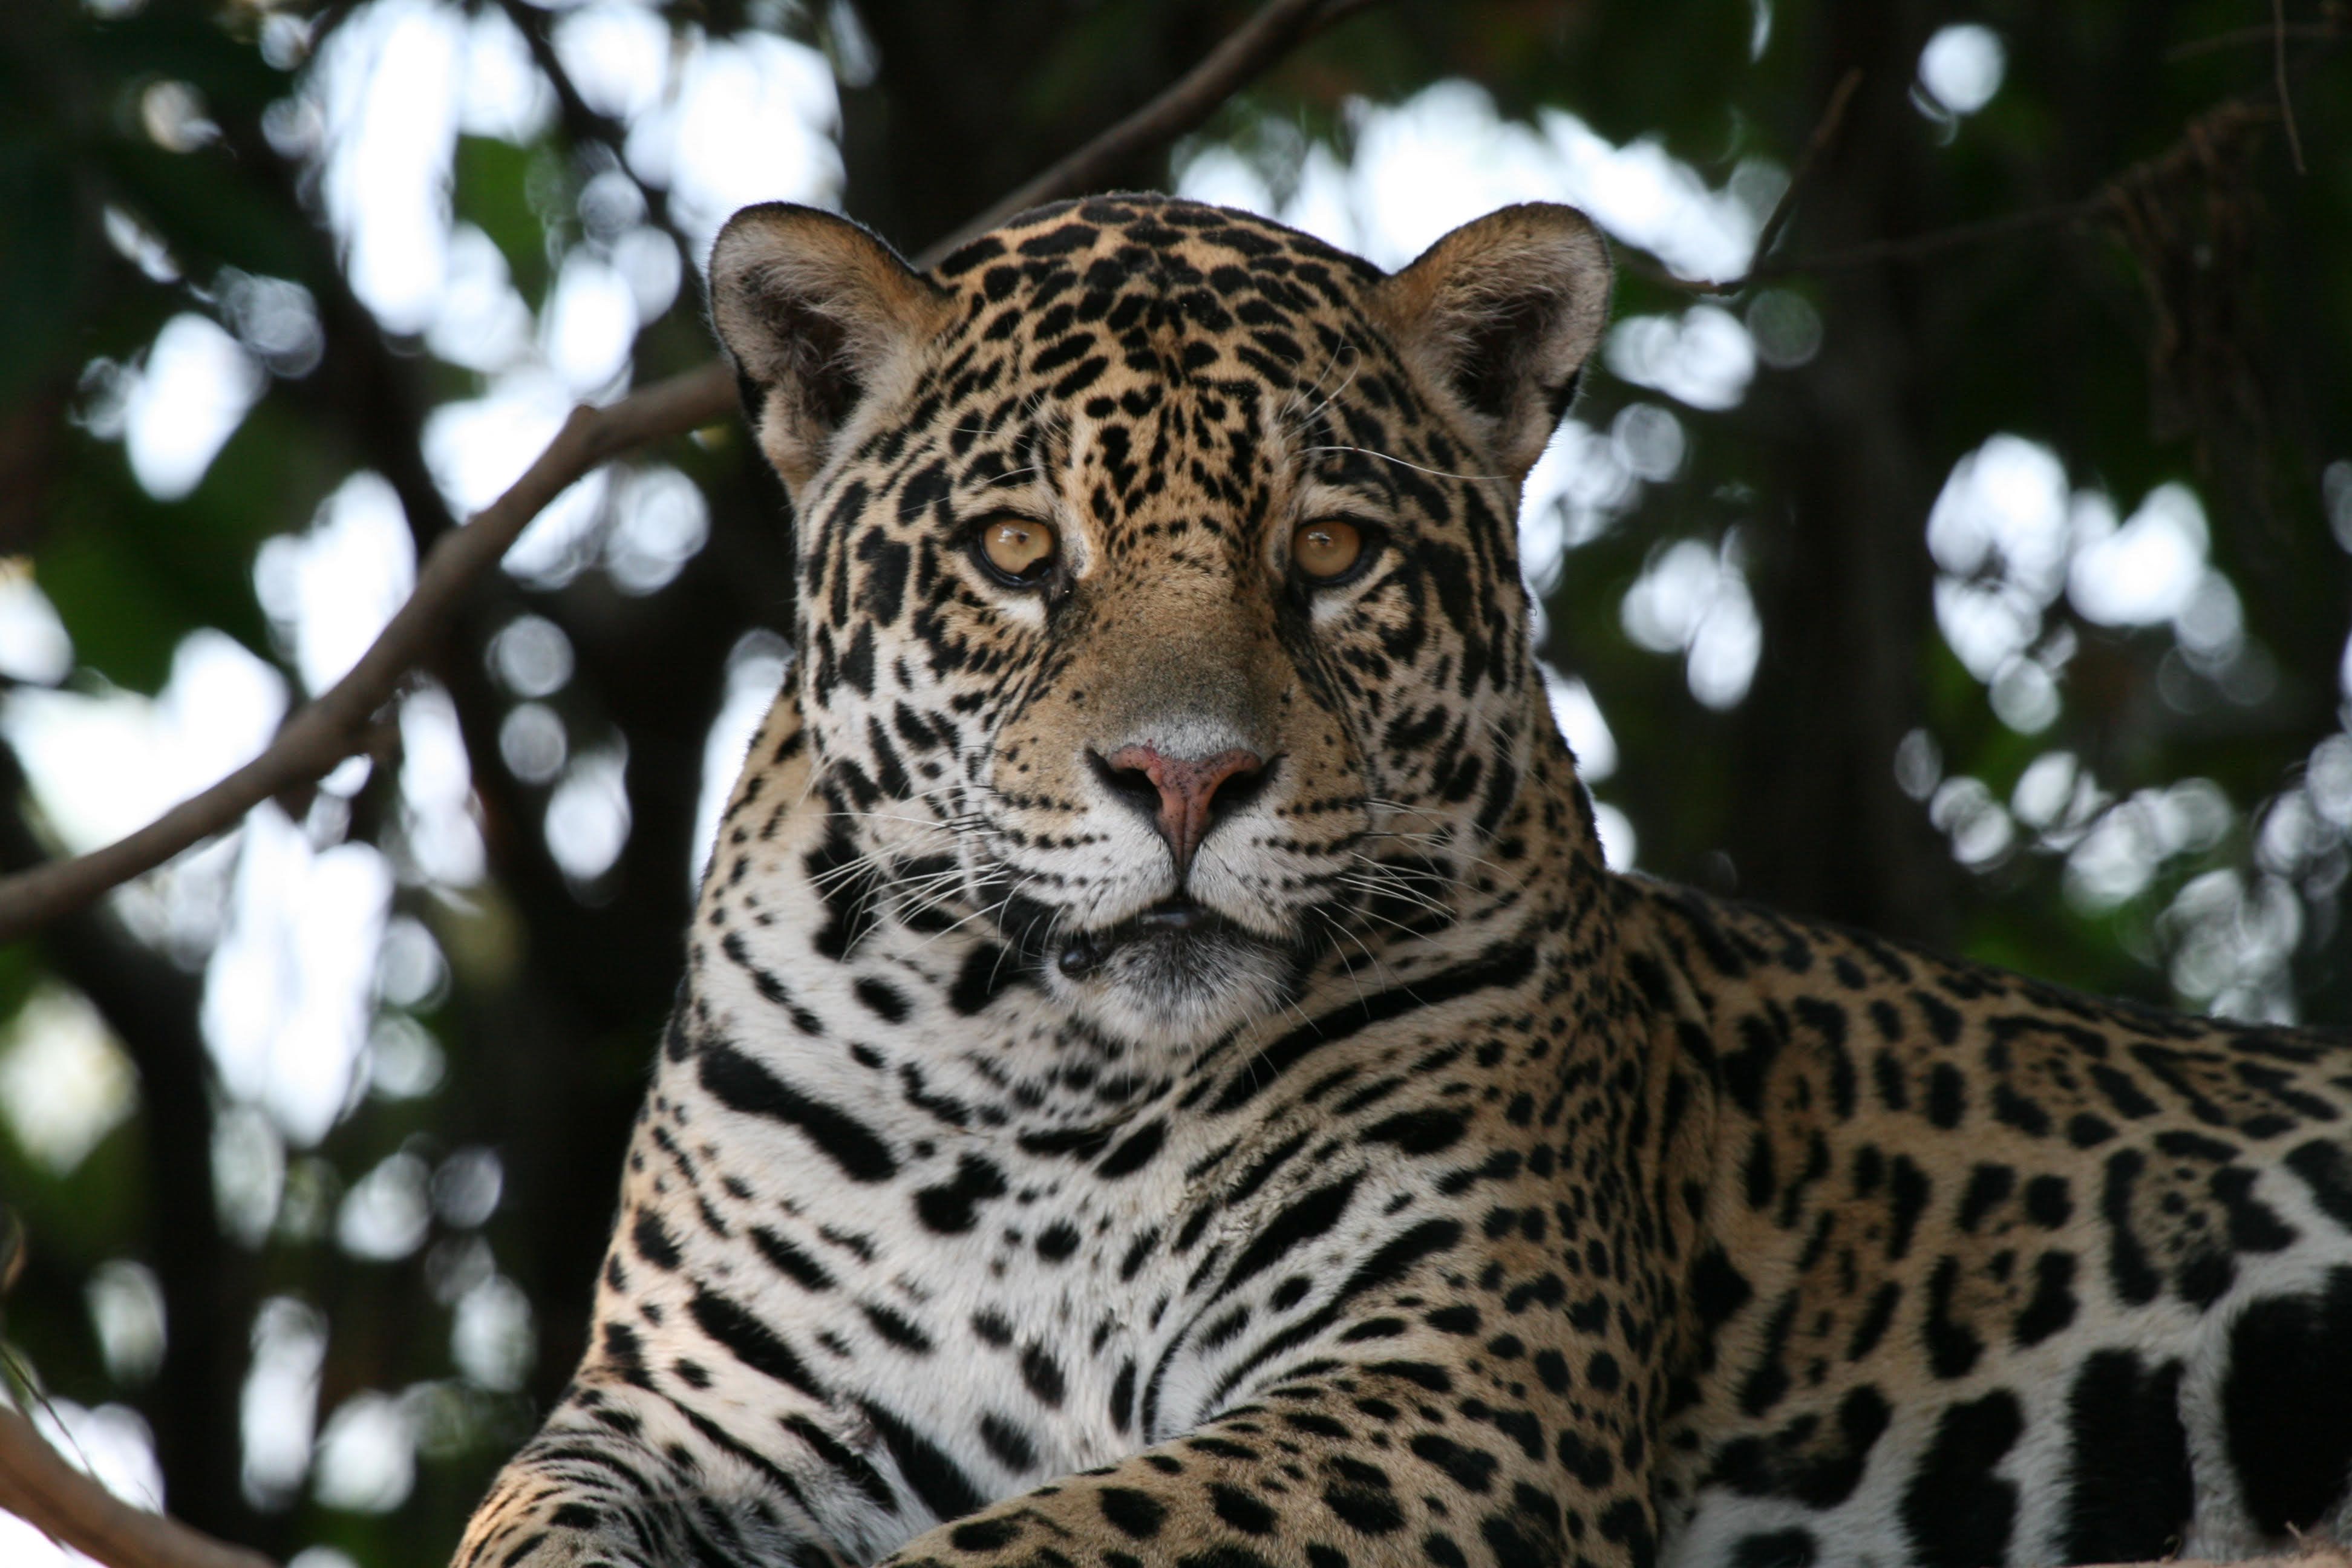 Le jaguar du Pantanal menacé